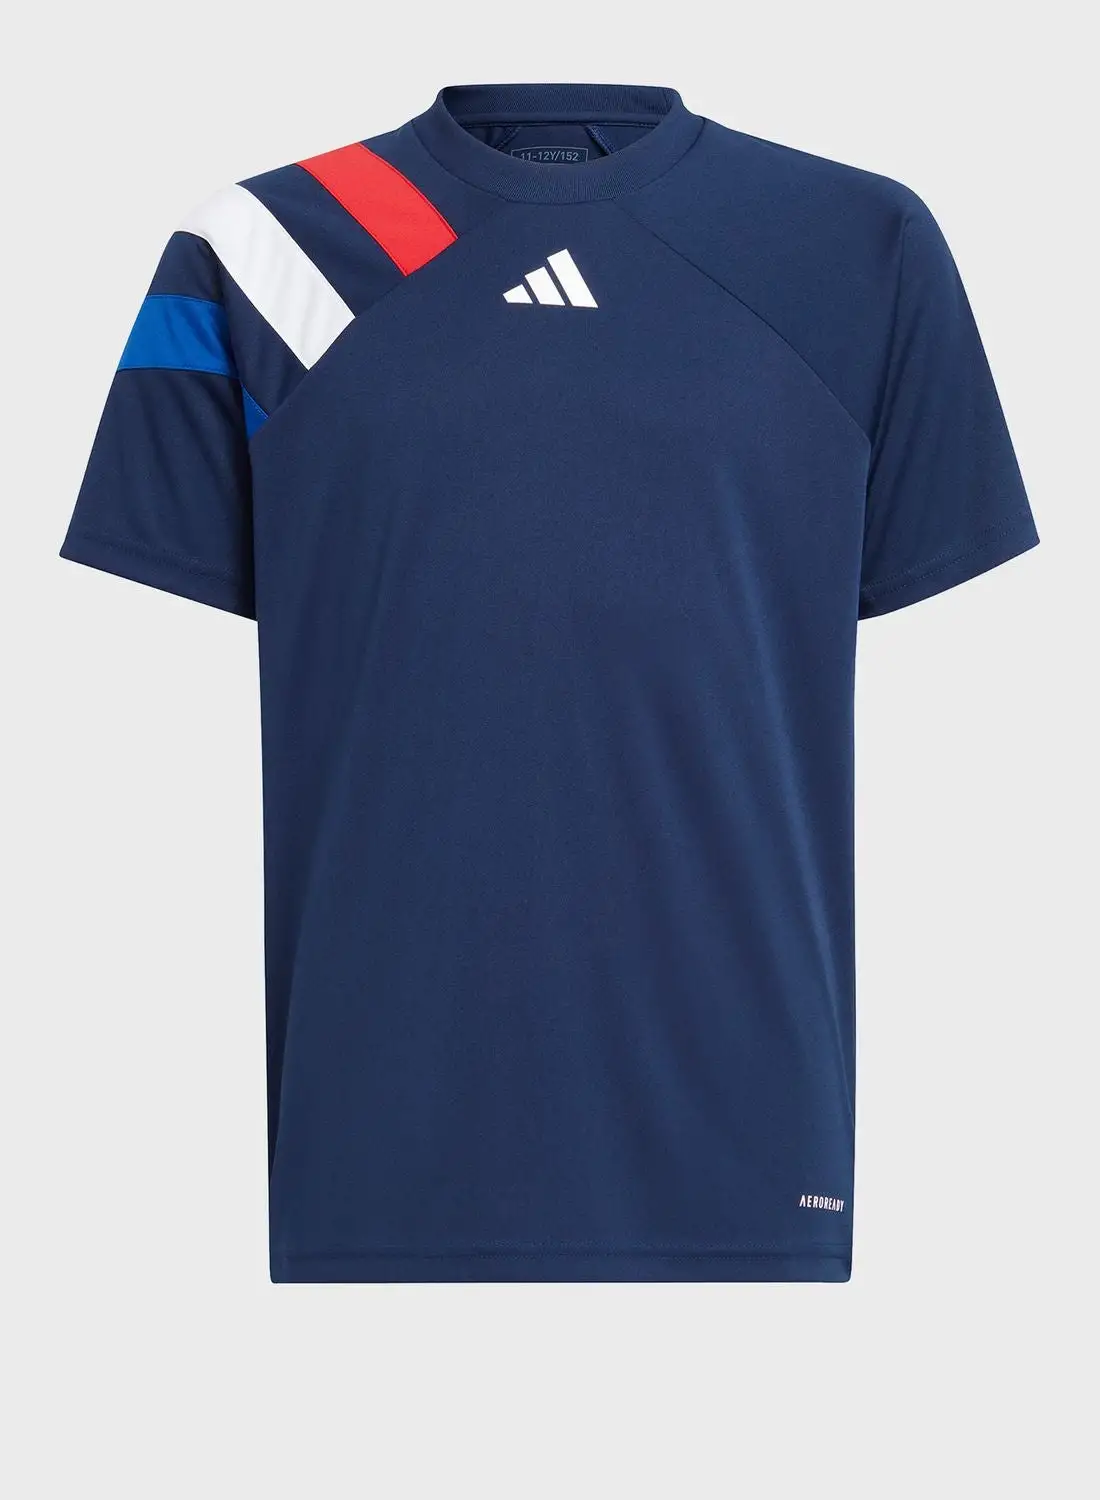 Adidas Fortore23 Jersey T-shirt